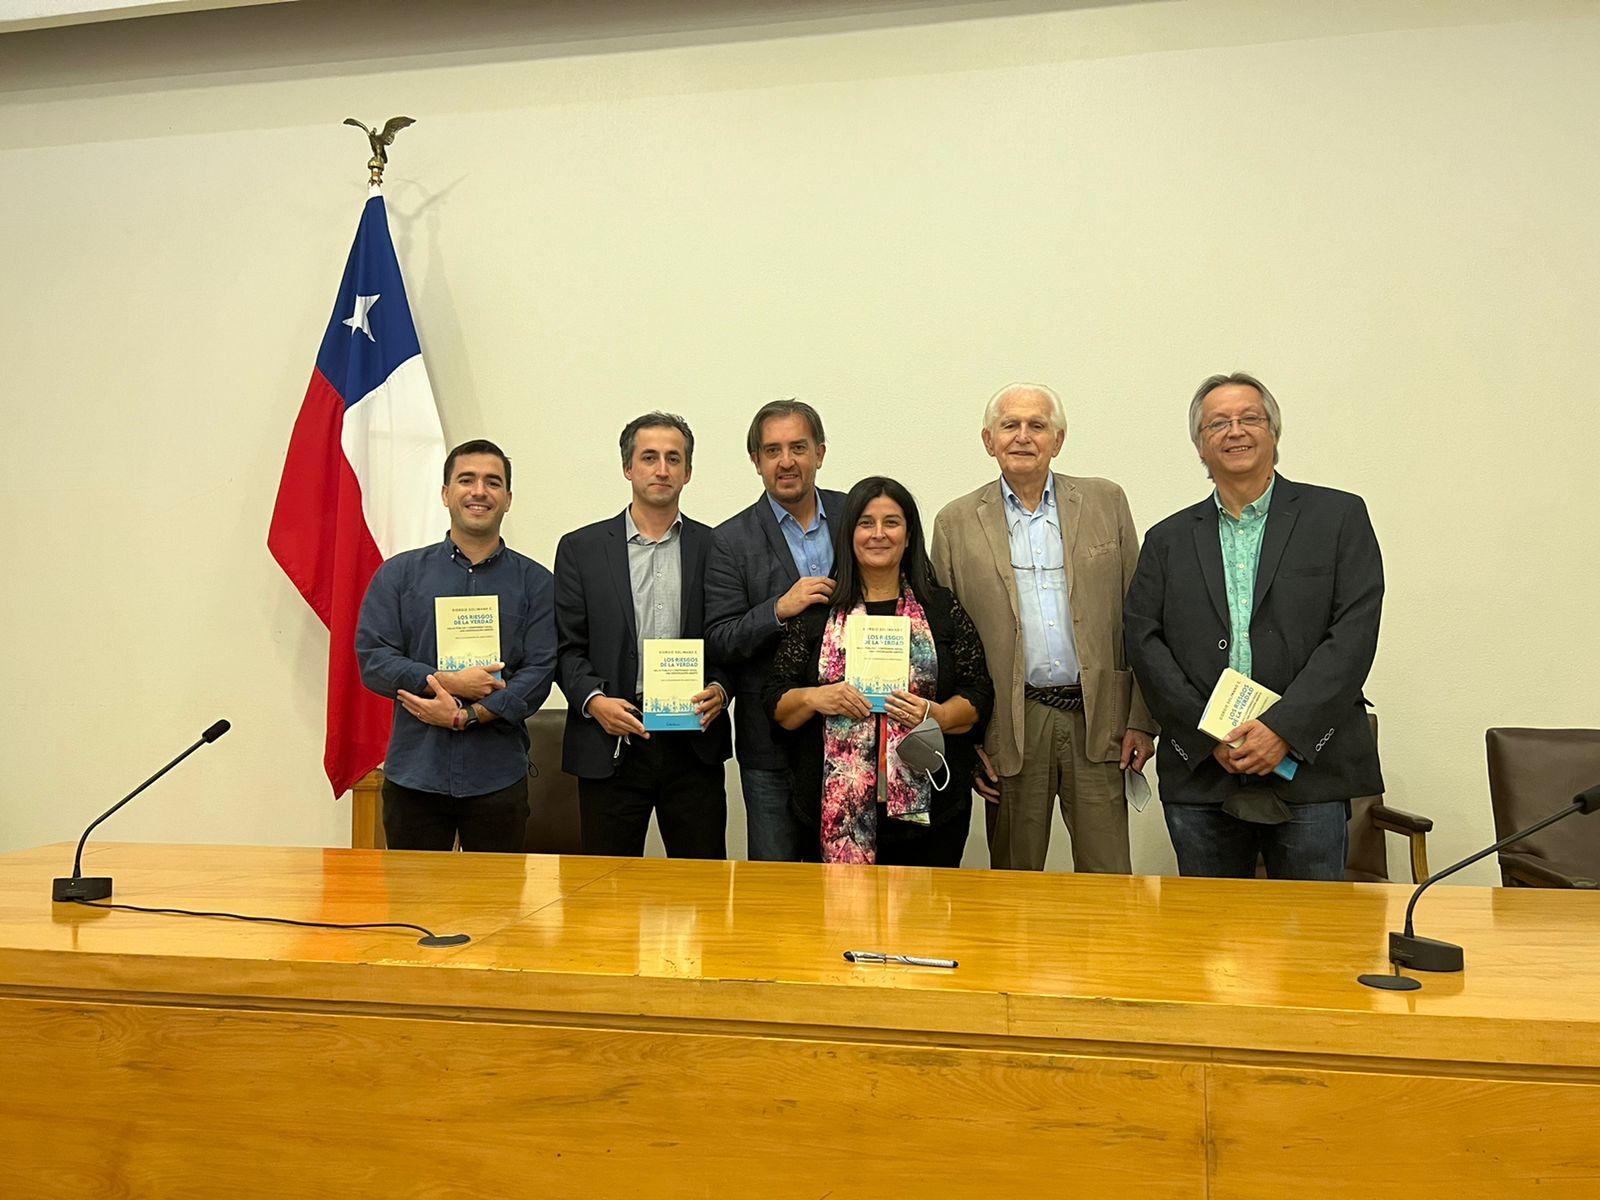 Académic@s de la Escuela de Salud Pública acompañaron al Dr. Giorgio Solimano en el lanzamiento de su nuevo libro.